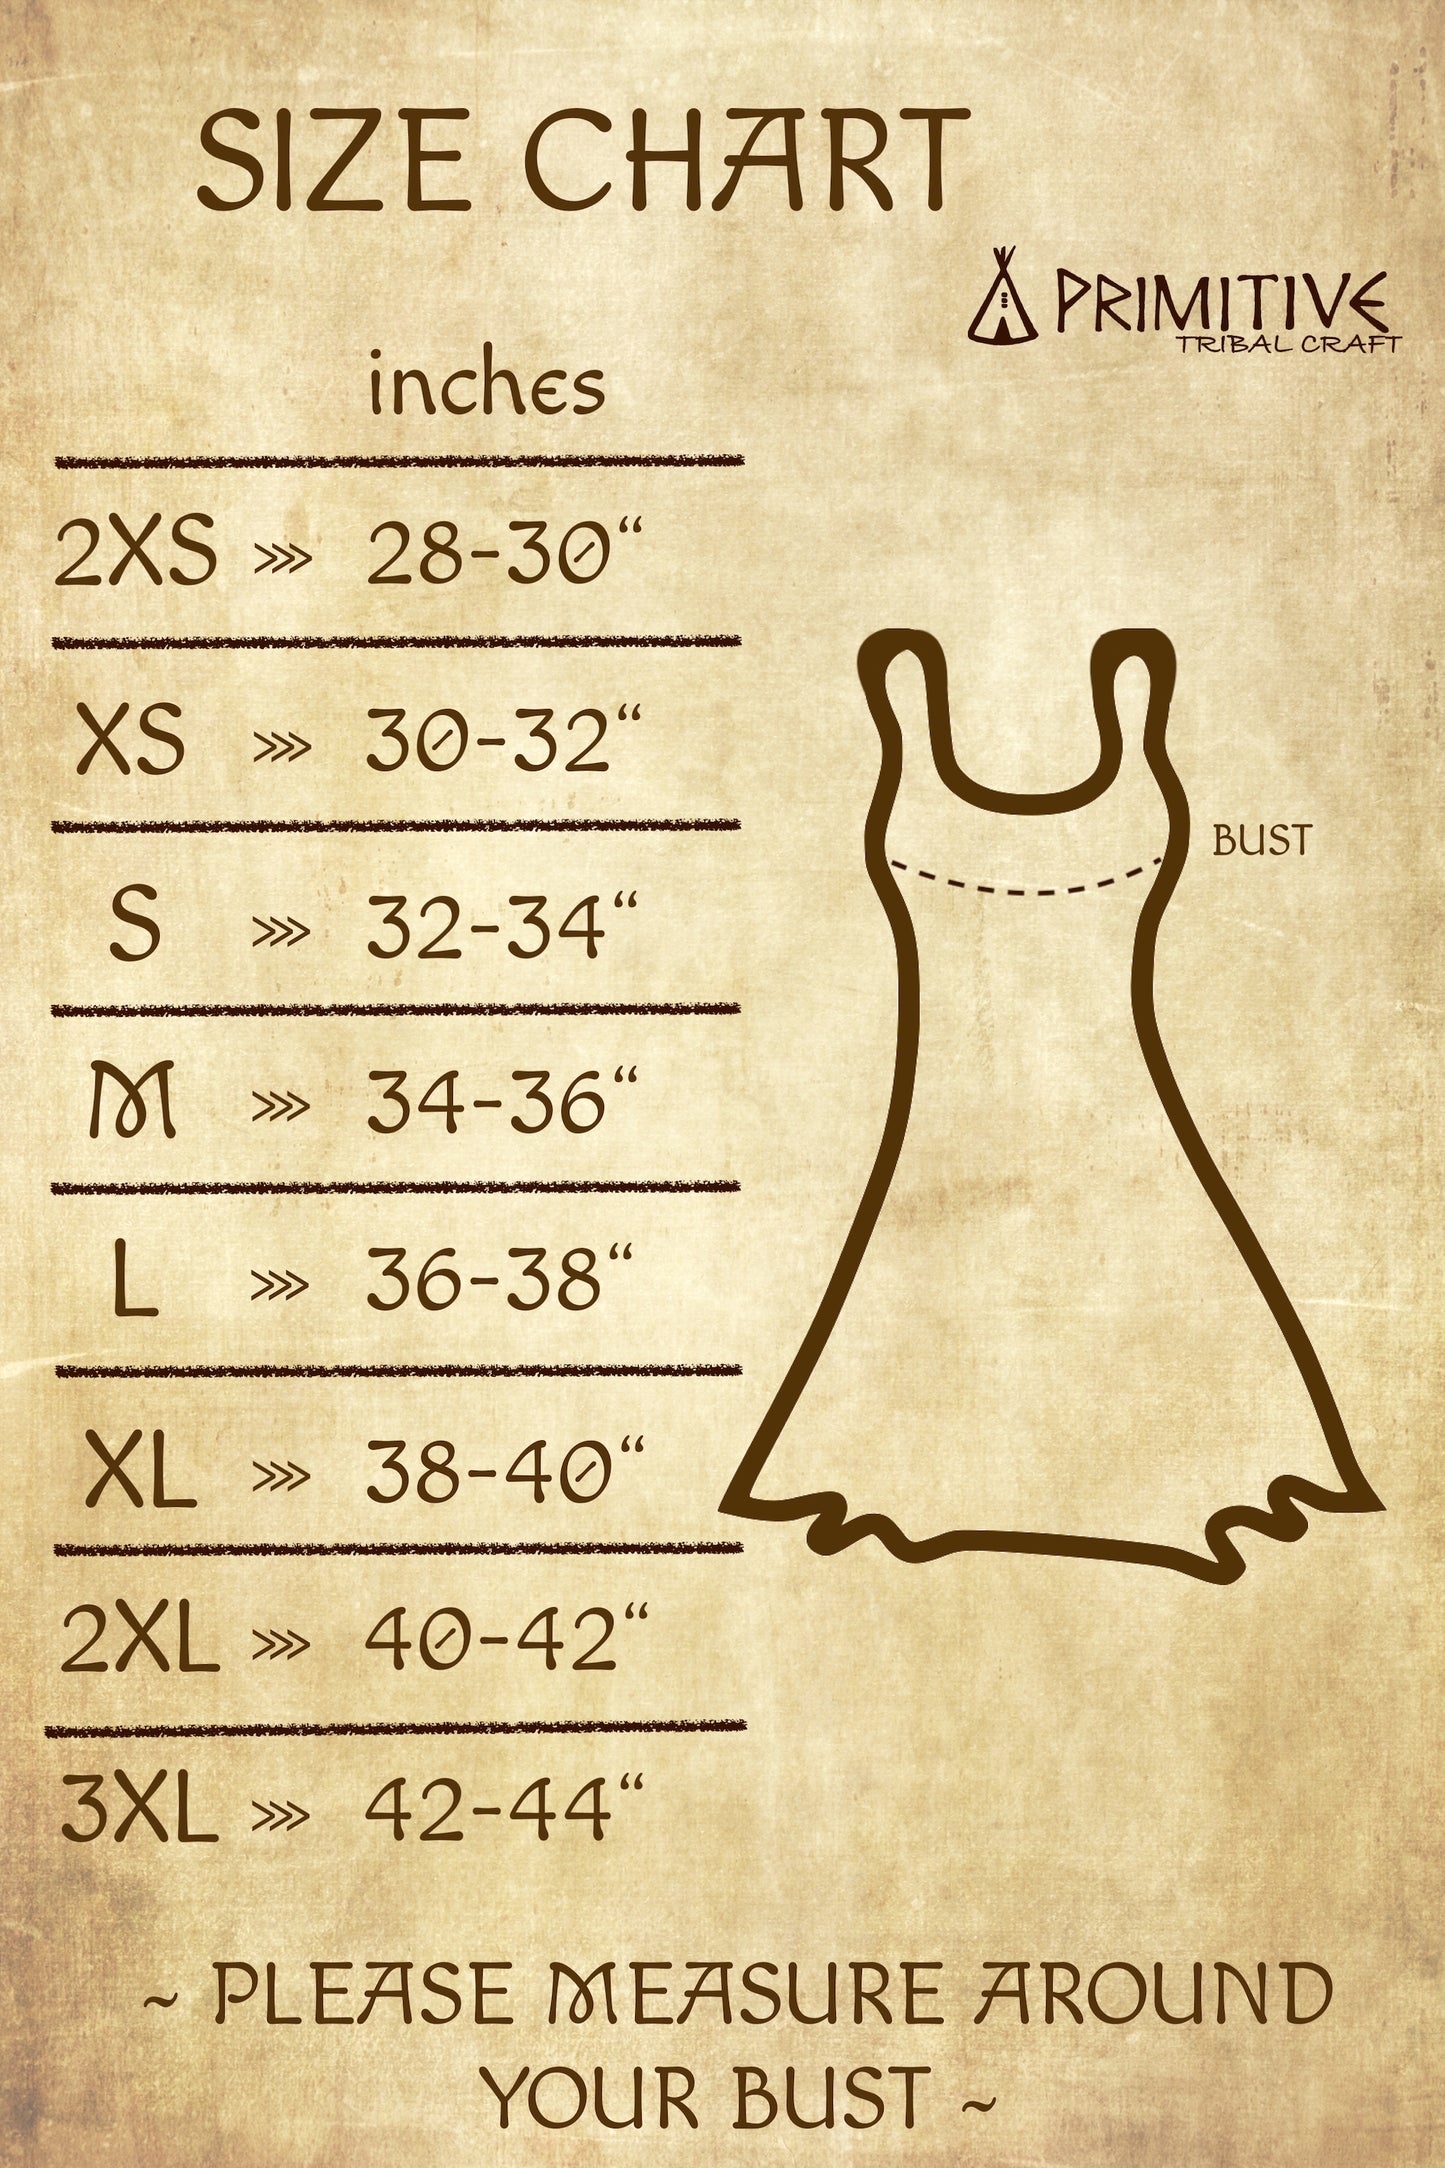 Kalya Dress »» Natural Linen Dress »» Sleeveless Short Dress